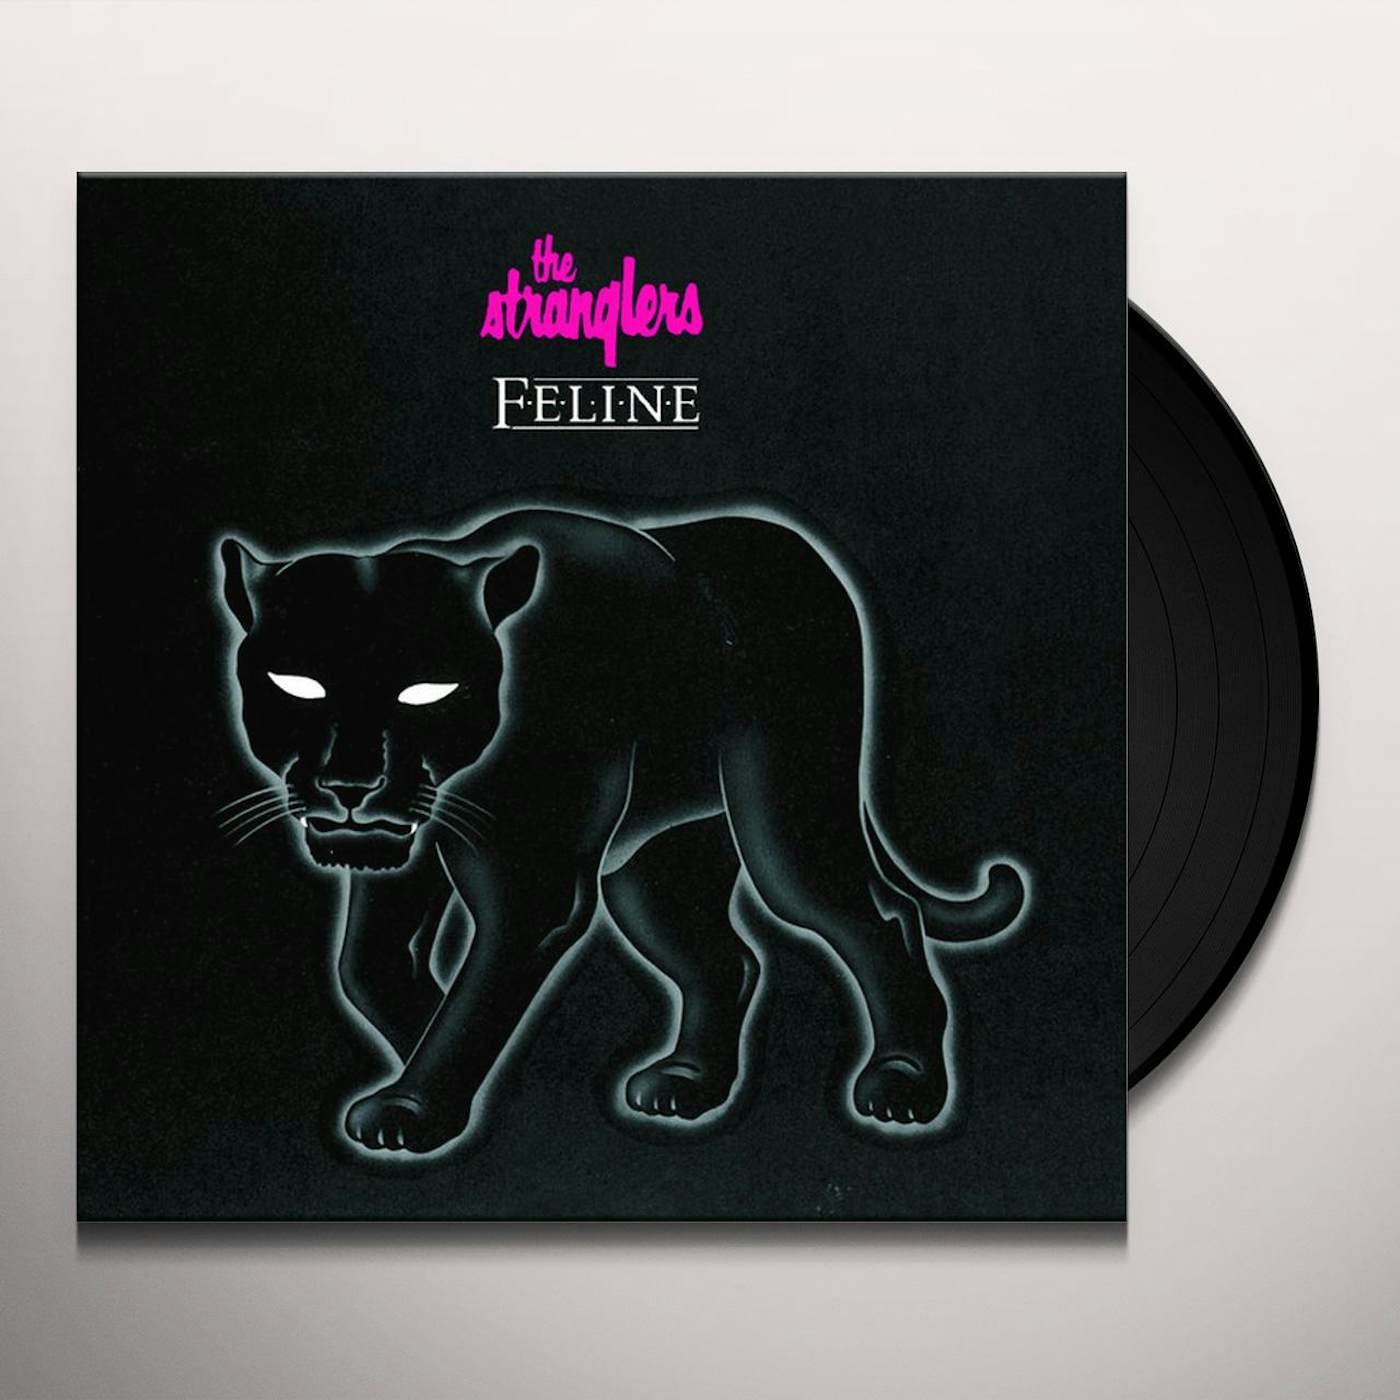 The Stranglers FELINE (FRA) Vinyl Record